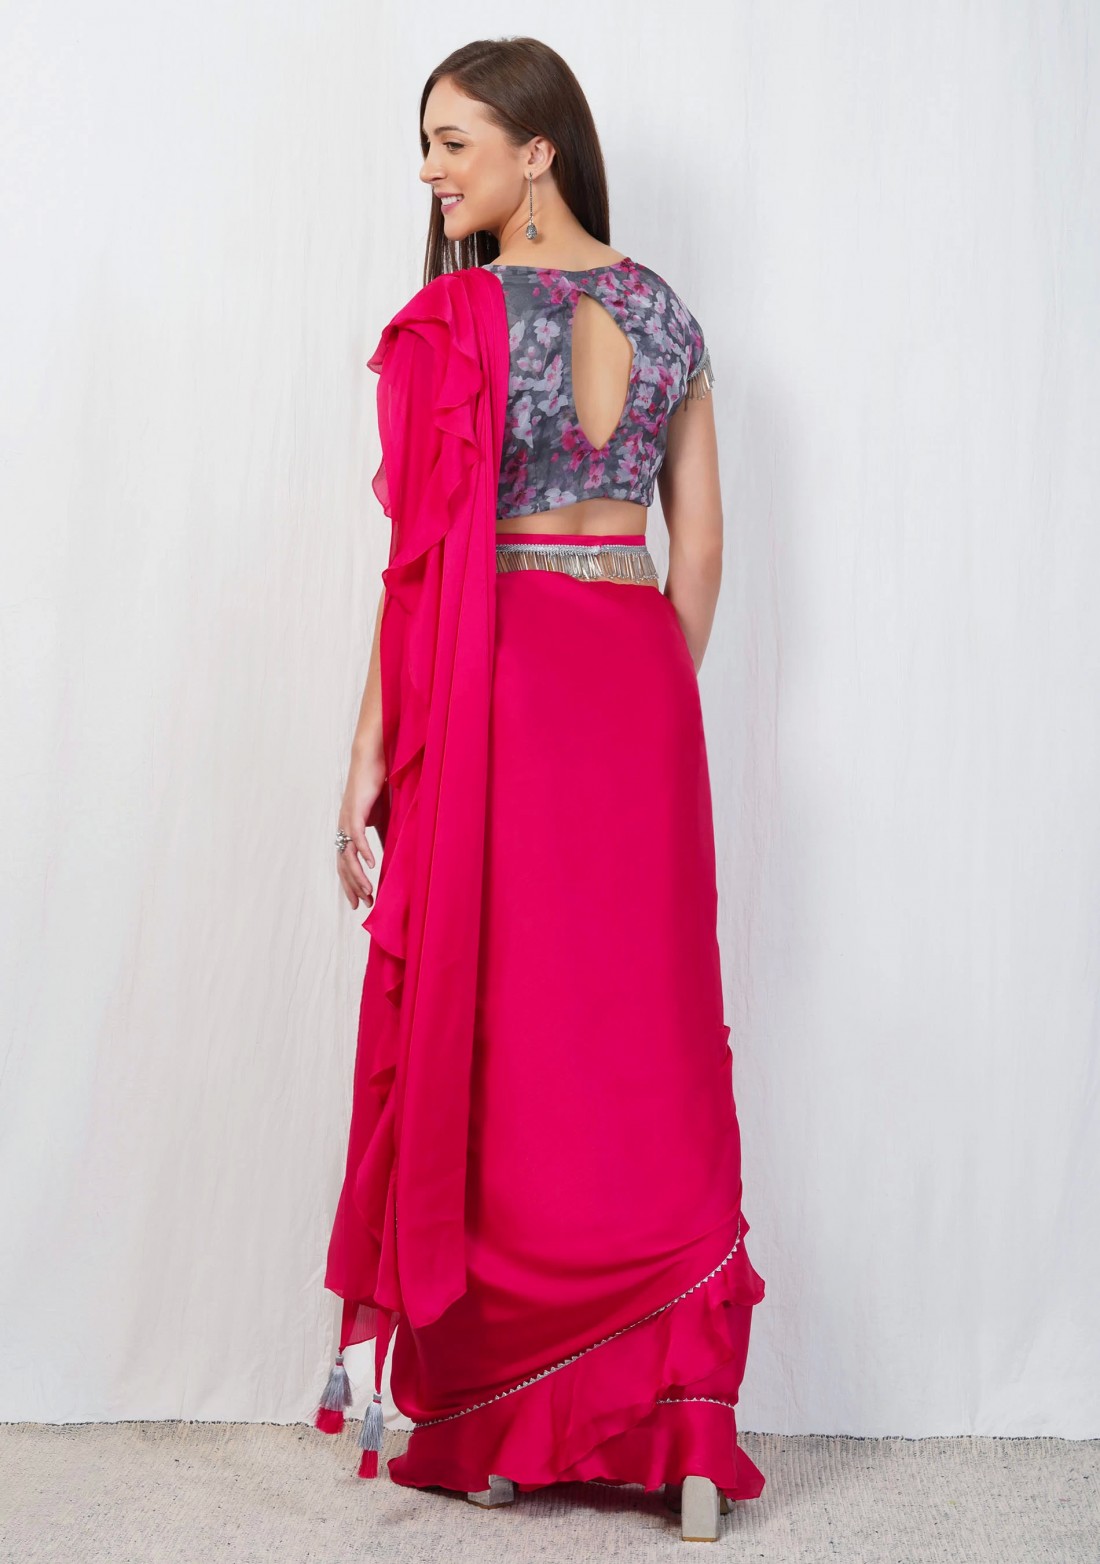 Hot Pink Satin Chiffon Ruffle Saree with Organza Printed Blouse